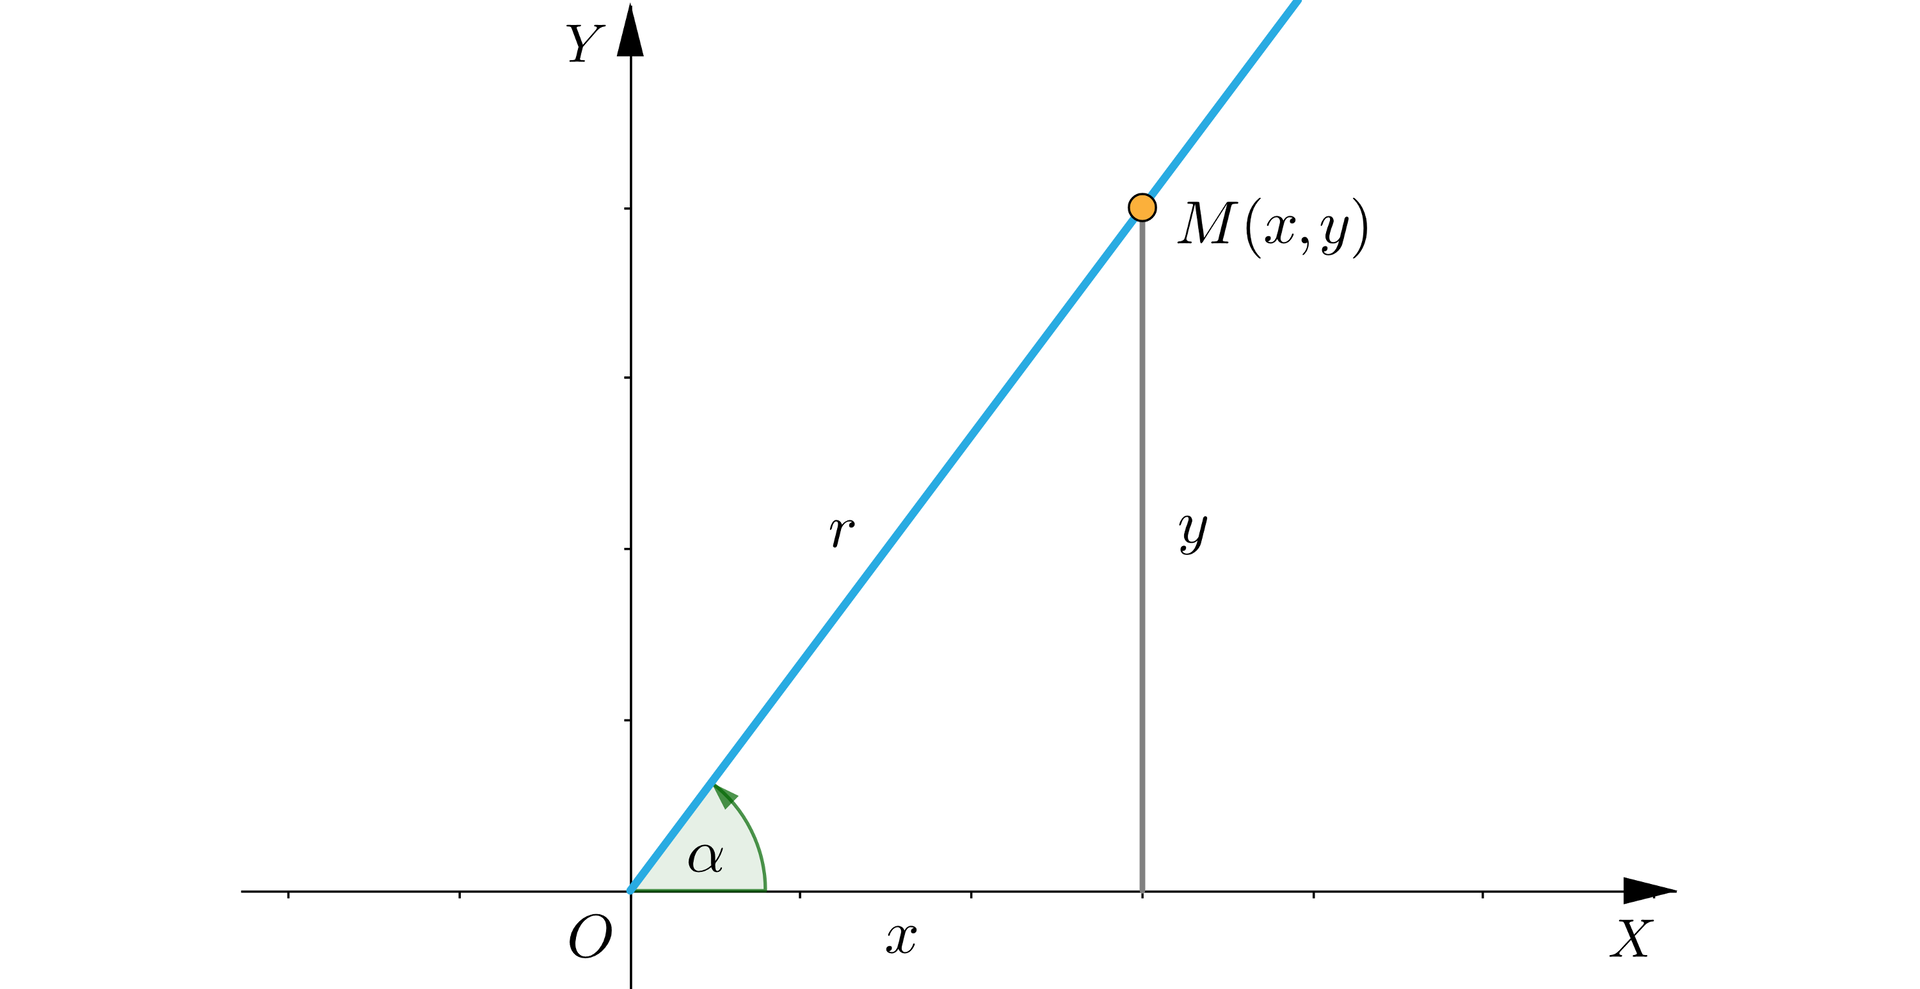 Ilustracja przedstawia układ współrzędnych z poziomą osią X oraz pionową Y. Rysunek skupia się głównie na pierwszej ćwiartce układu. Punkt O to początek układu o współrzędnych zero zero. Z punktu O wyprowadzona jest półprosta po ostrym kątem alfa (kąt między dodatnią półosią OX a półprostą). Na półprostej zaznaczony jest punkt M o współrzędnych x y i z tego punktu upuszczony jest odcinek prostopadły do osi X. W ten sposób powstaje trójkąt, którego podstawa leży na osi X i ma długość x, czyli taką, jak pierwsza współrzędna punktu M. Prawy pionowy bok trójkąta ma długość y, czyli tyle, ile wynosi druga współrzędna punktu M. Oba te boki tworzą kąt prosty. Przeciwprostokątna, czyli odcinek O M ma długość r i jest odległością punktu M od początku układu współrzędnych.